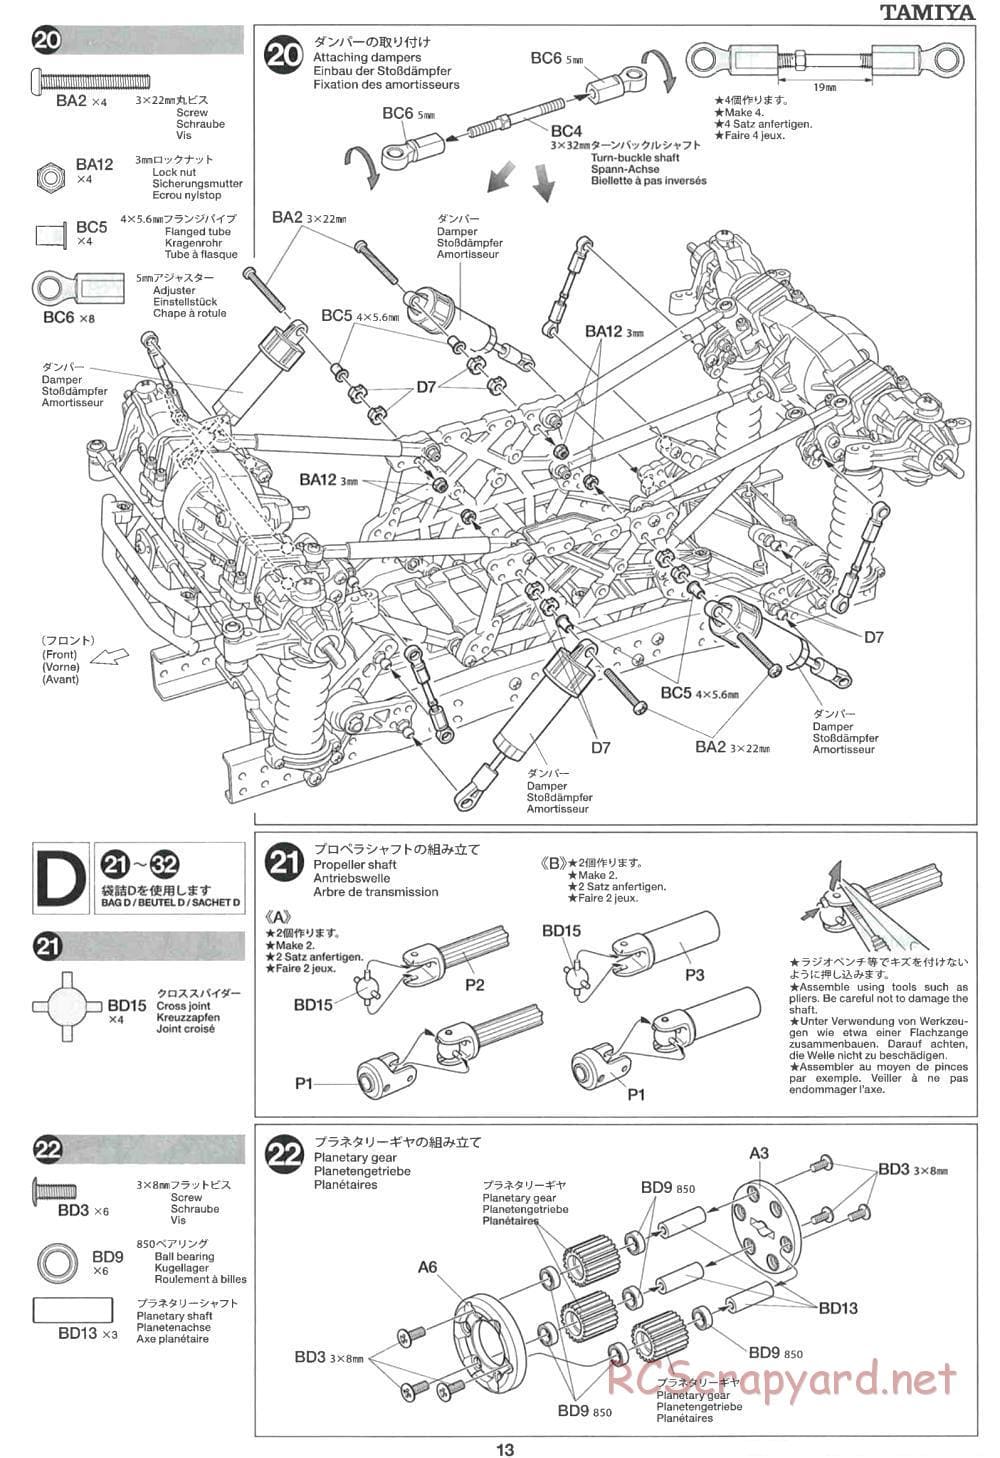 Tamiya - CR-01 Chassis - Manual - Page 13